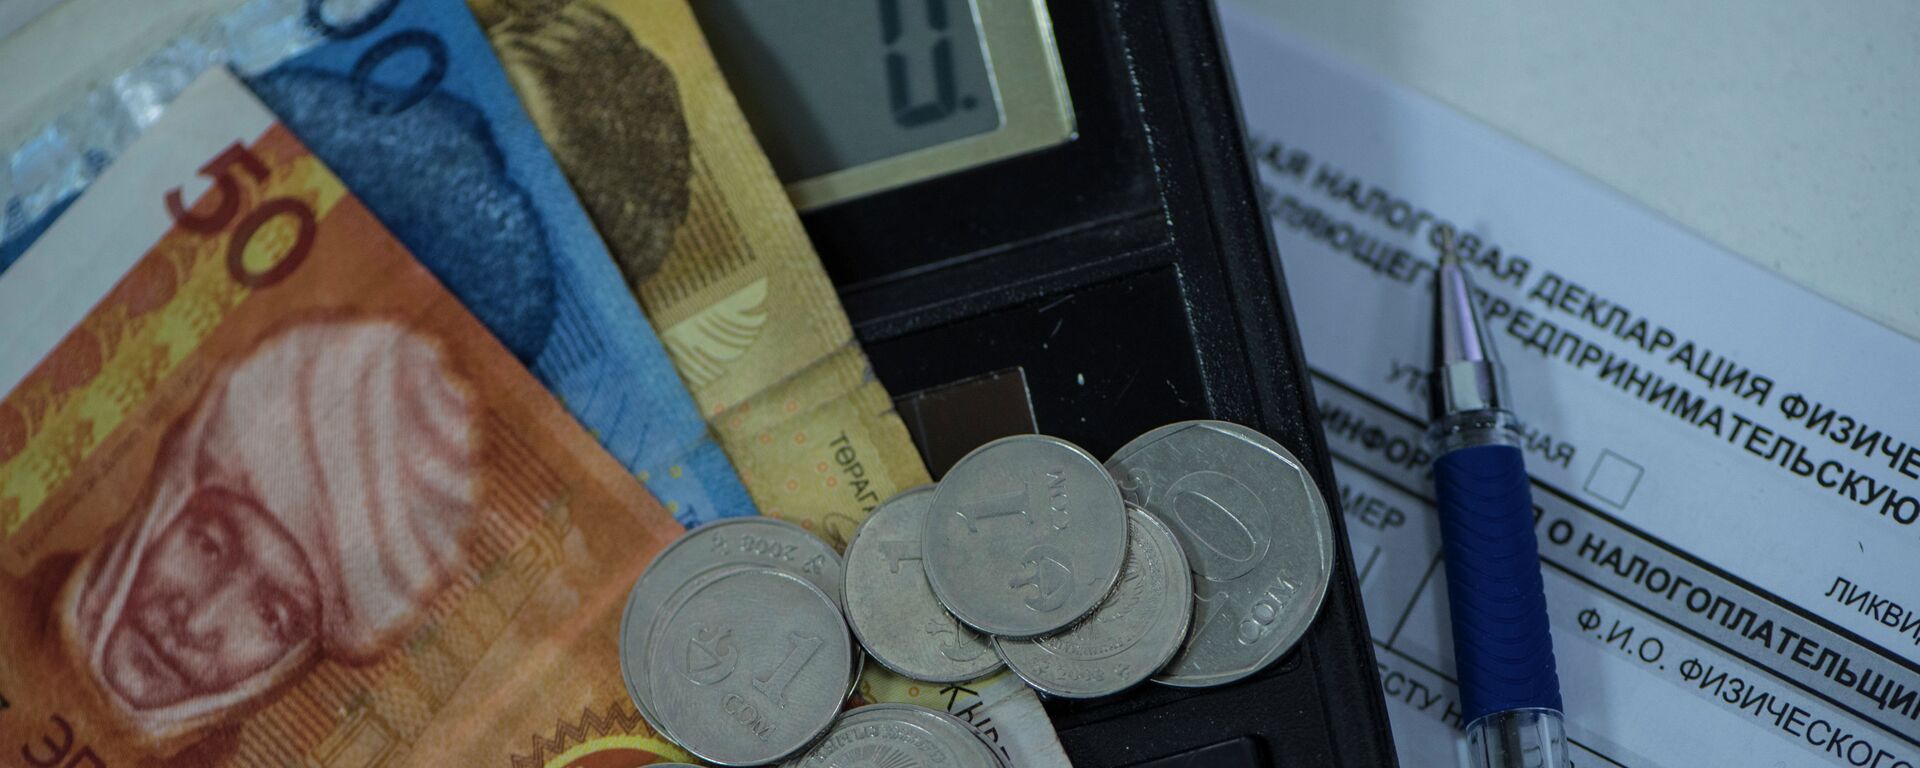 Монеты и купюры на единой налоговой декларации. Архивное фото - Sputnik Кыргызстан, 1920, 02.03.2021